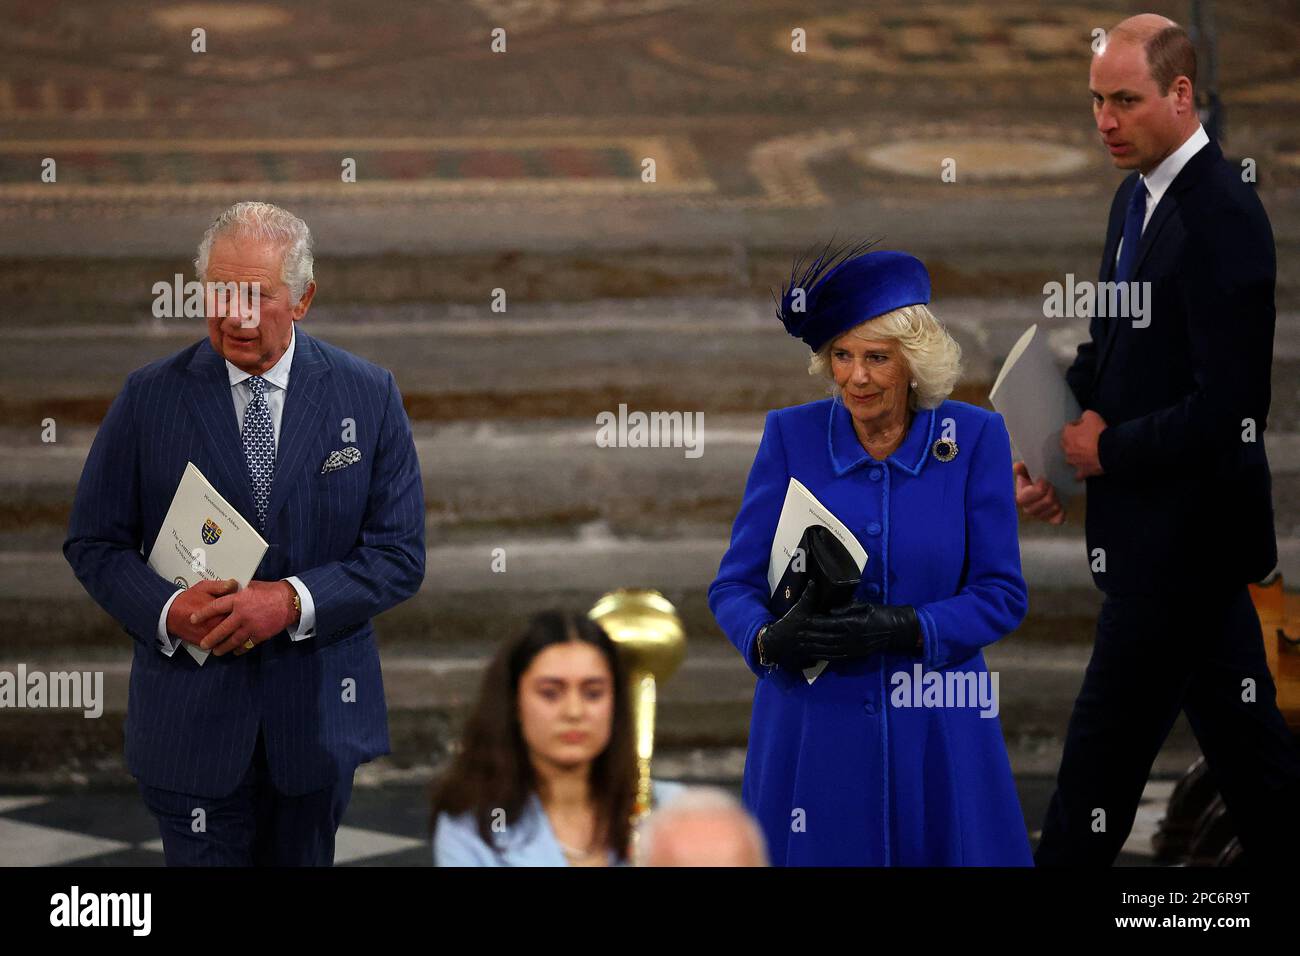 Der britische König Charles, Camilla, der königliche Gemahl und Prinz William, Prinz von Wales, nehmen am Commonwealth Day in Westminster Abbey in London, Großbritannien, am 13. März 2023 Teil. REUTERS/Hannah McKay/Pool Stockfoto